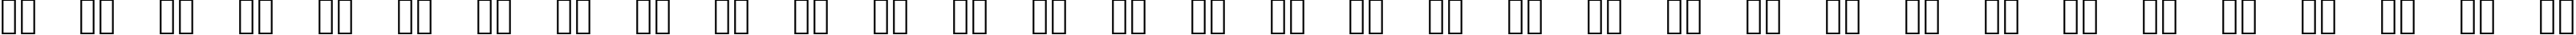 Пример написания русского алфавита шрифтом SoupLeaf